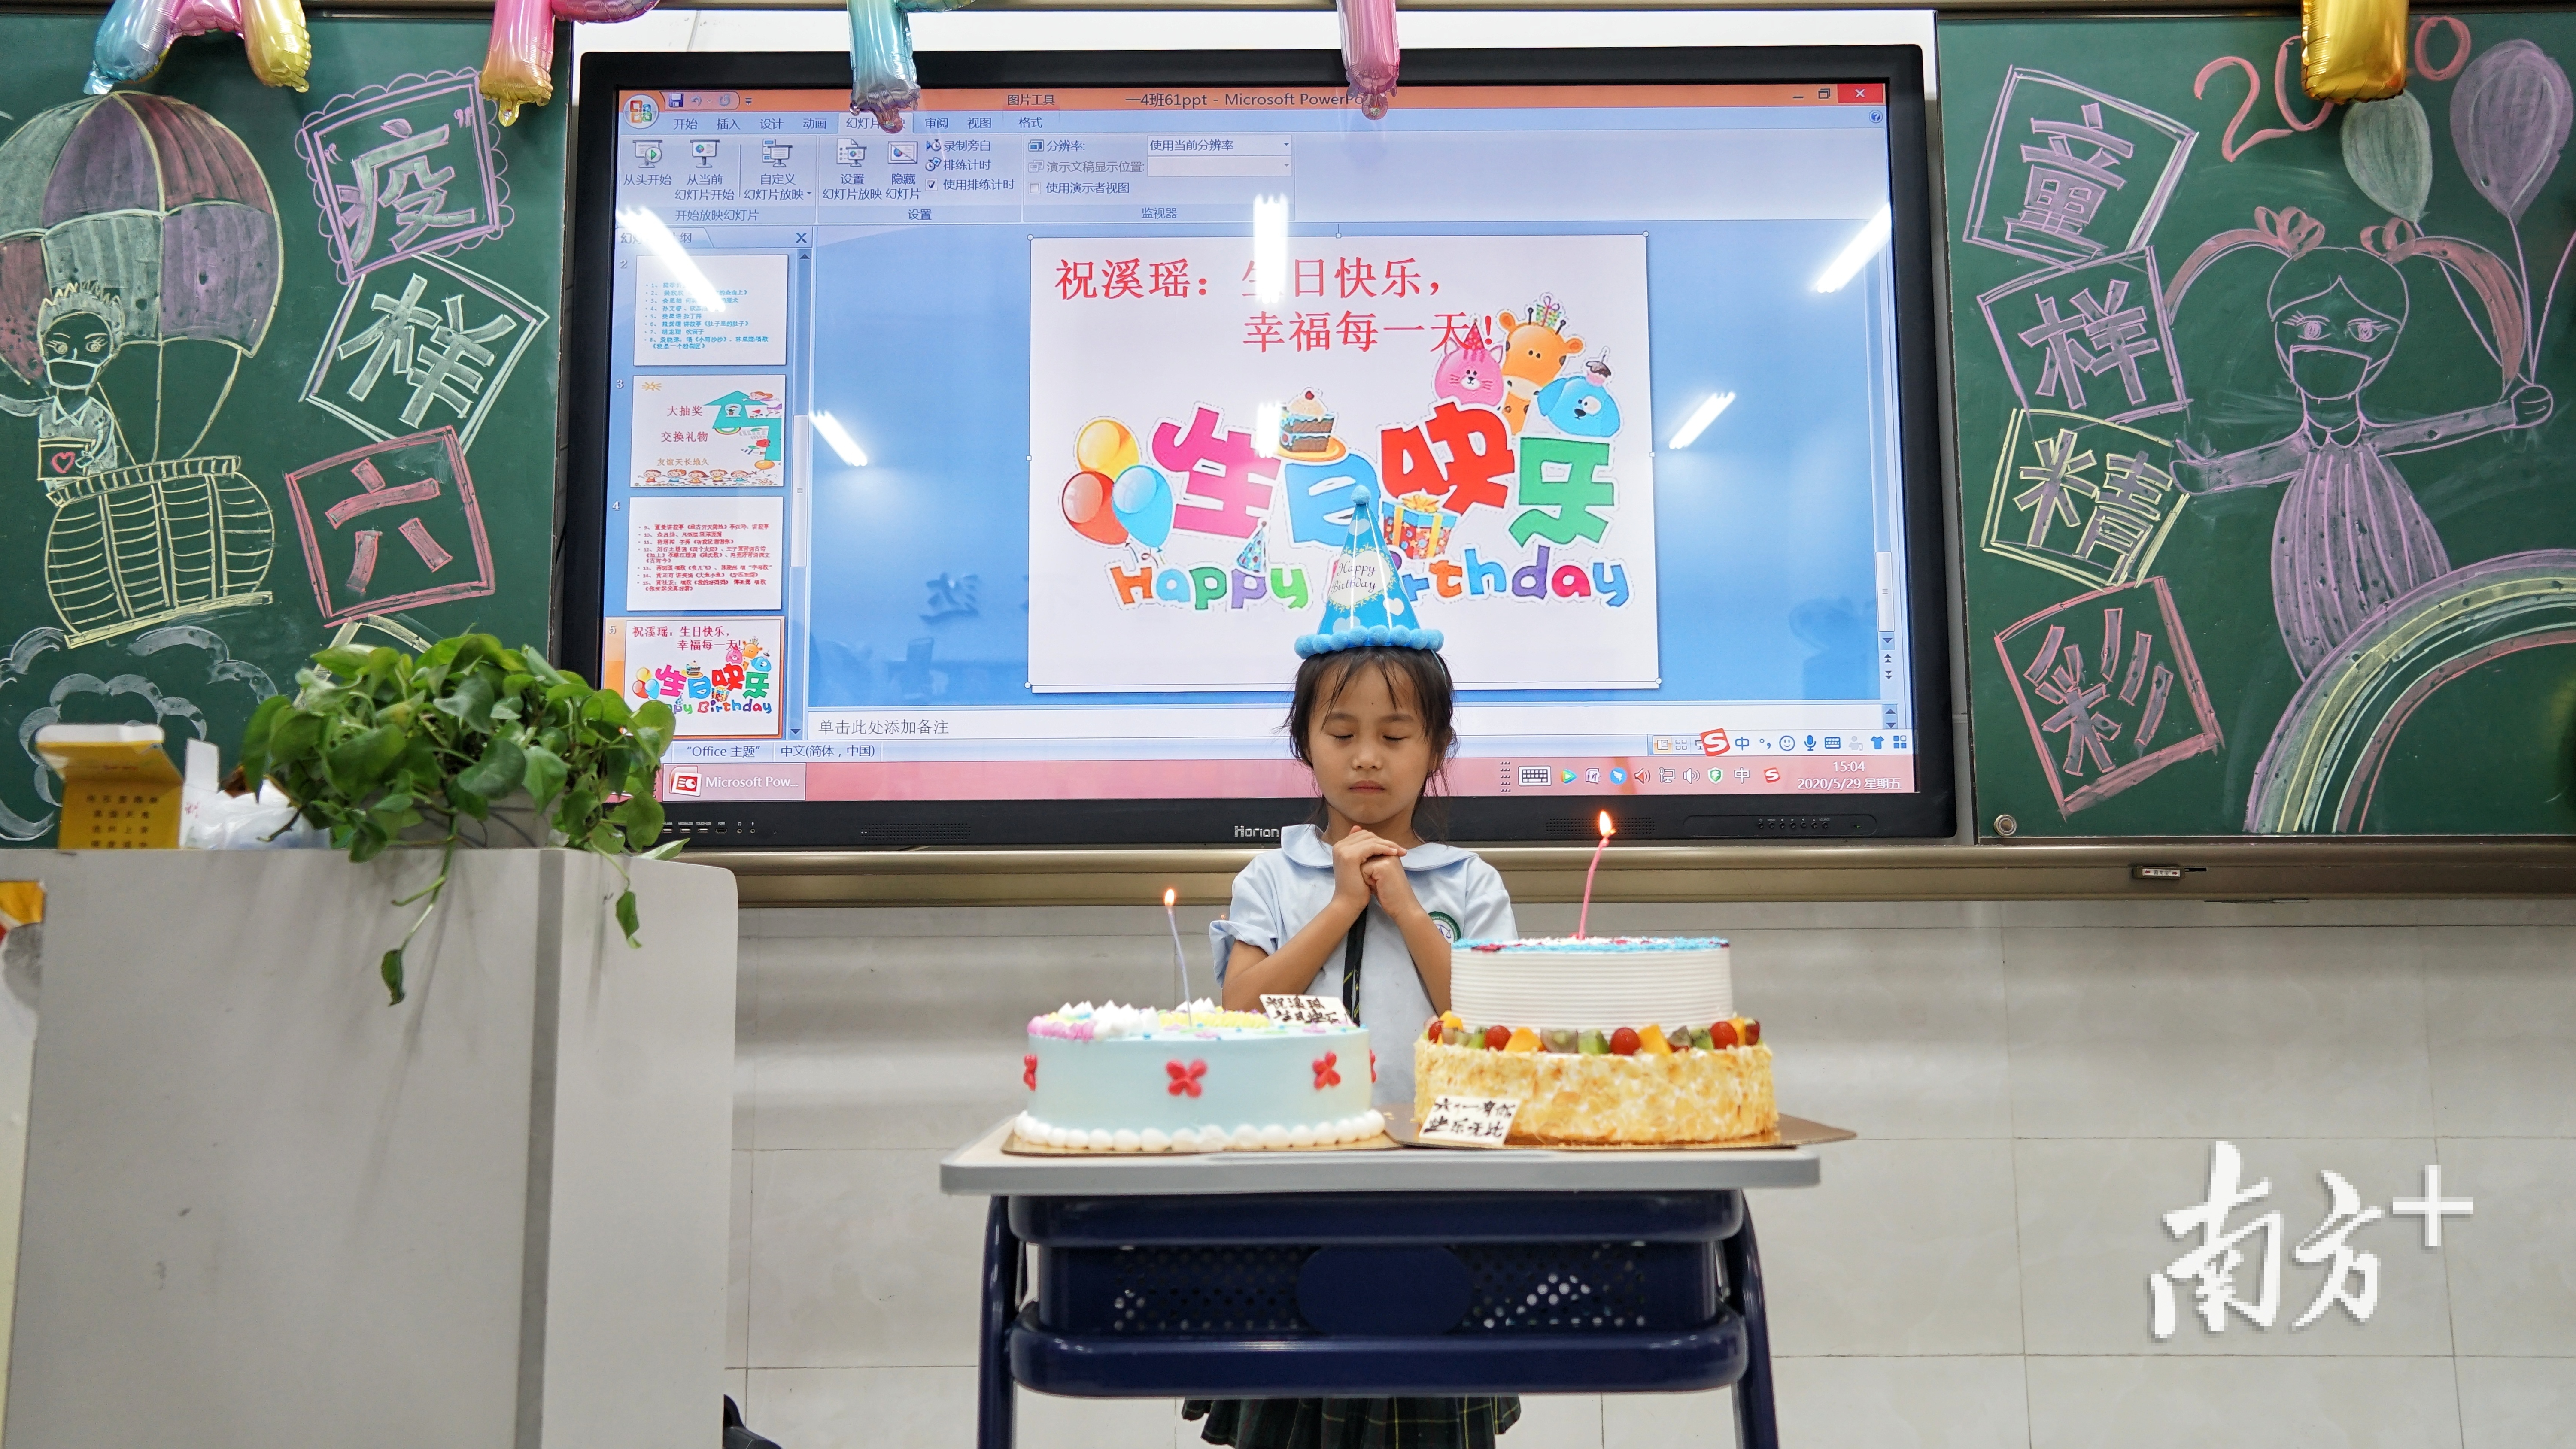 一年（4）班的雷溪瑶今天刚好过生日。全班46个小朋友和老师们都在为她庆生。